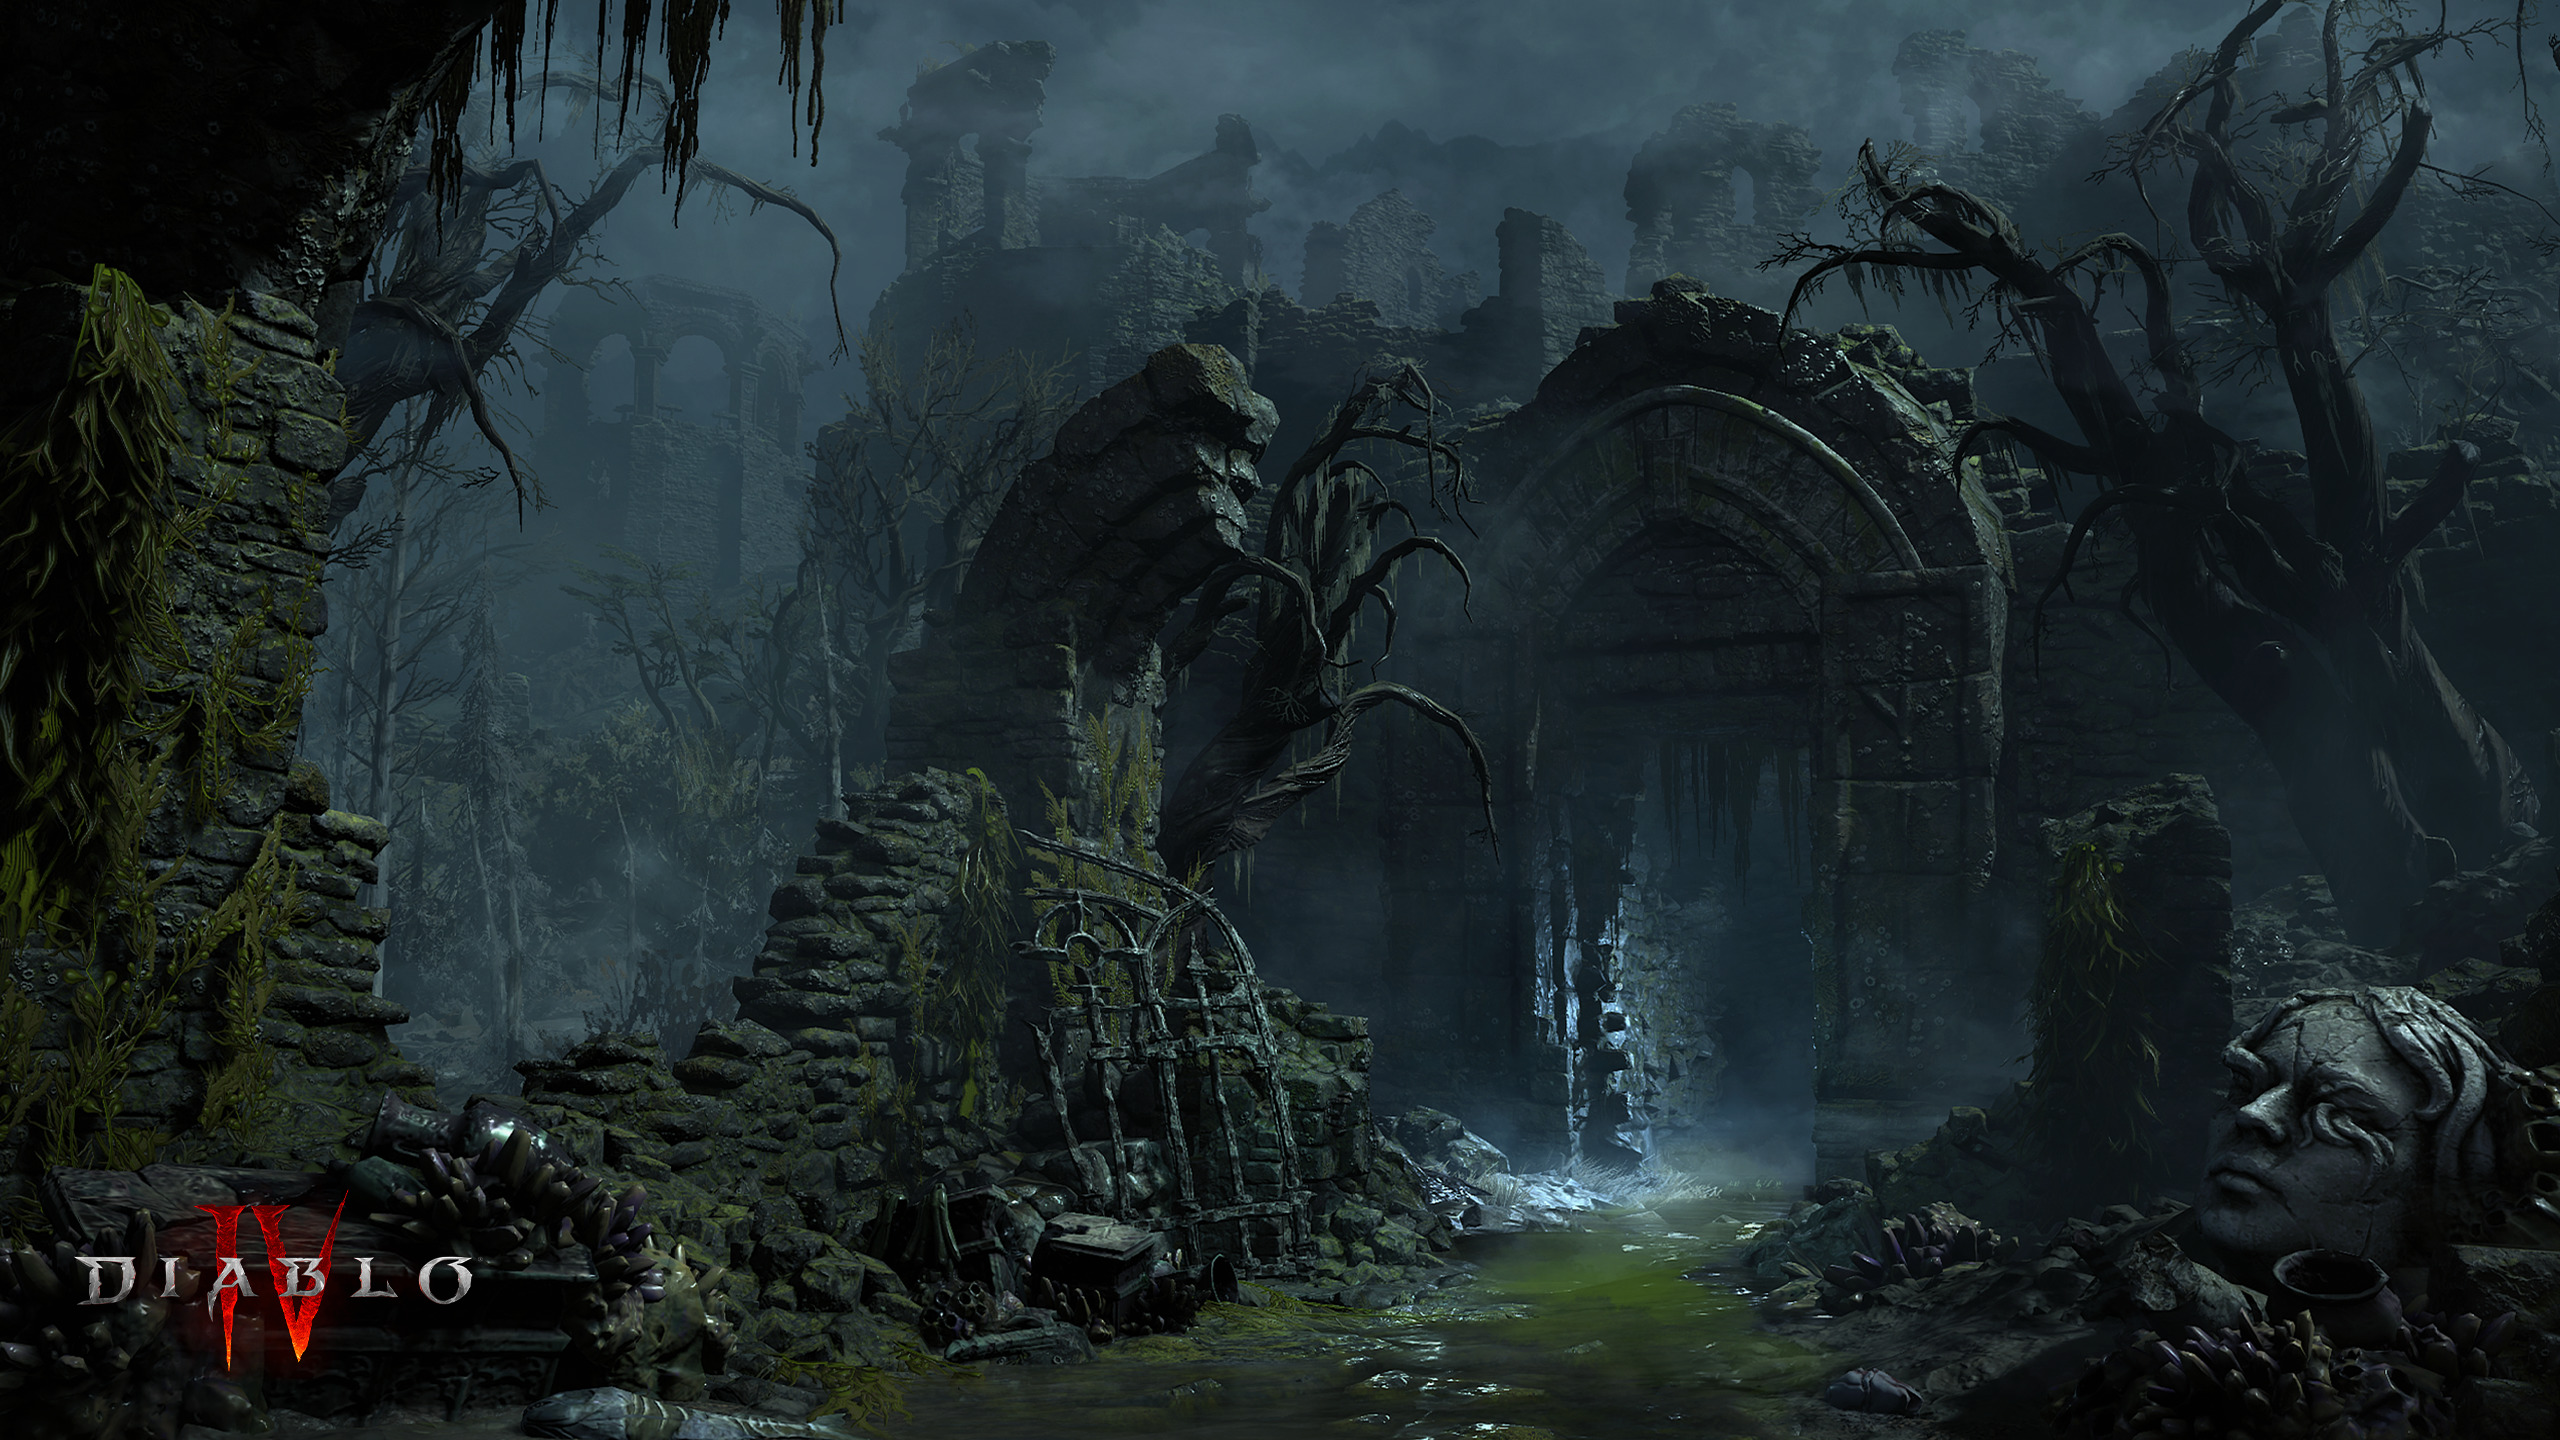 Diablo Diablo IV Video Games Watermarked Ruins Video Game Art Trees Water 2560x1440